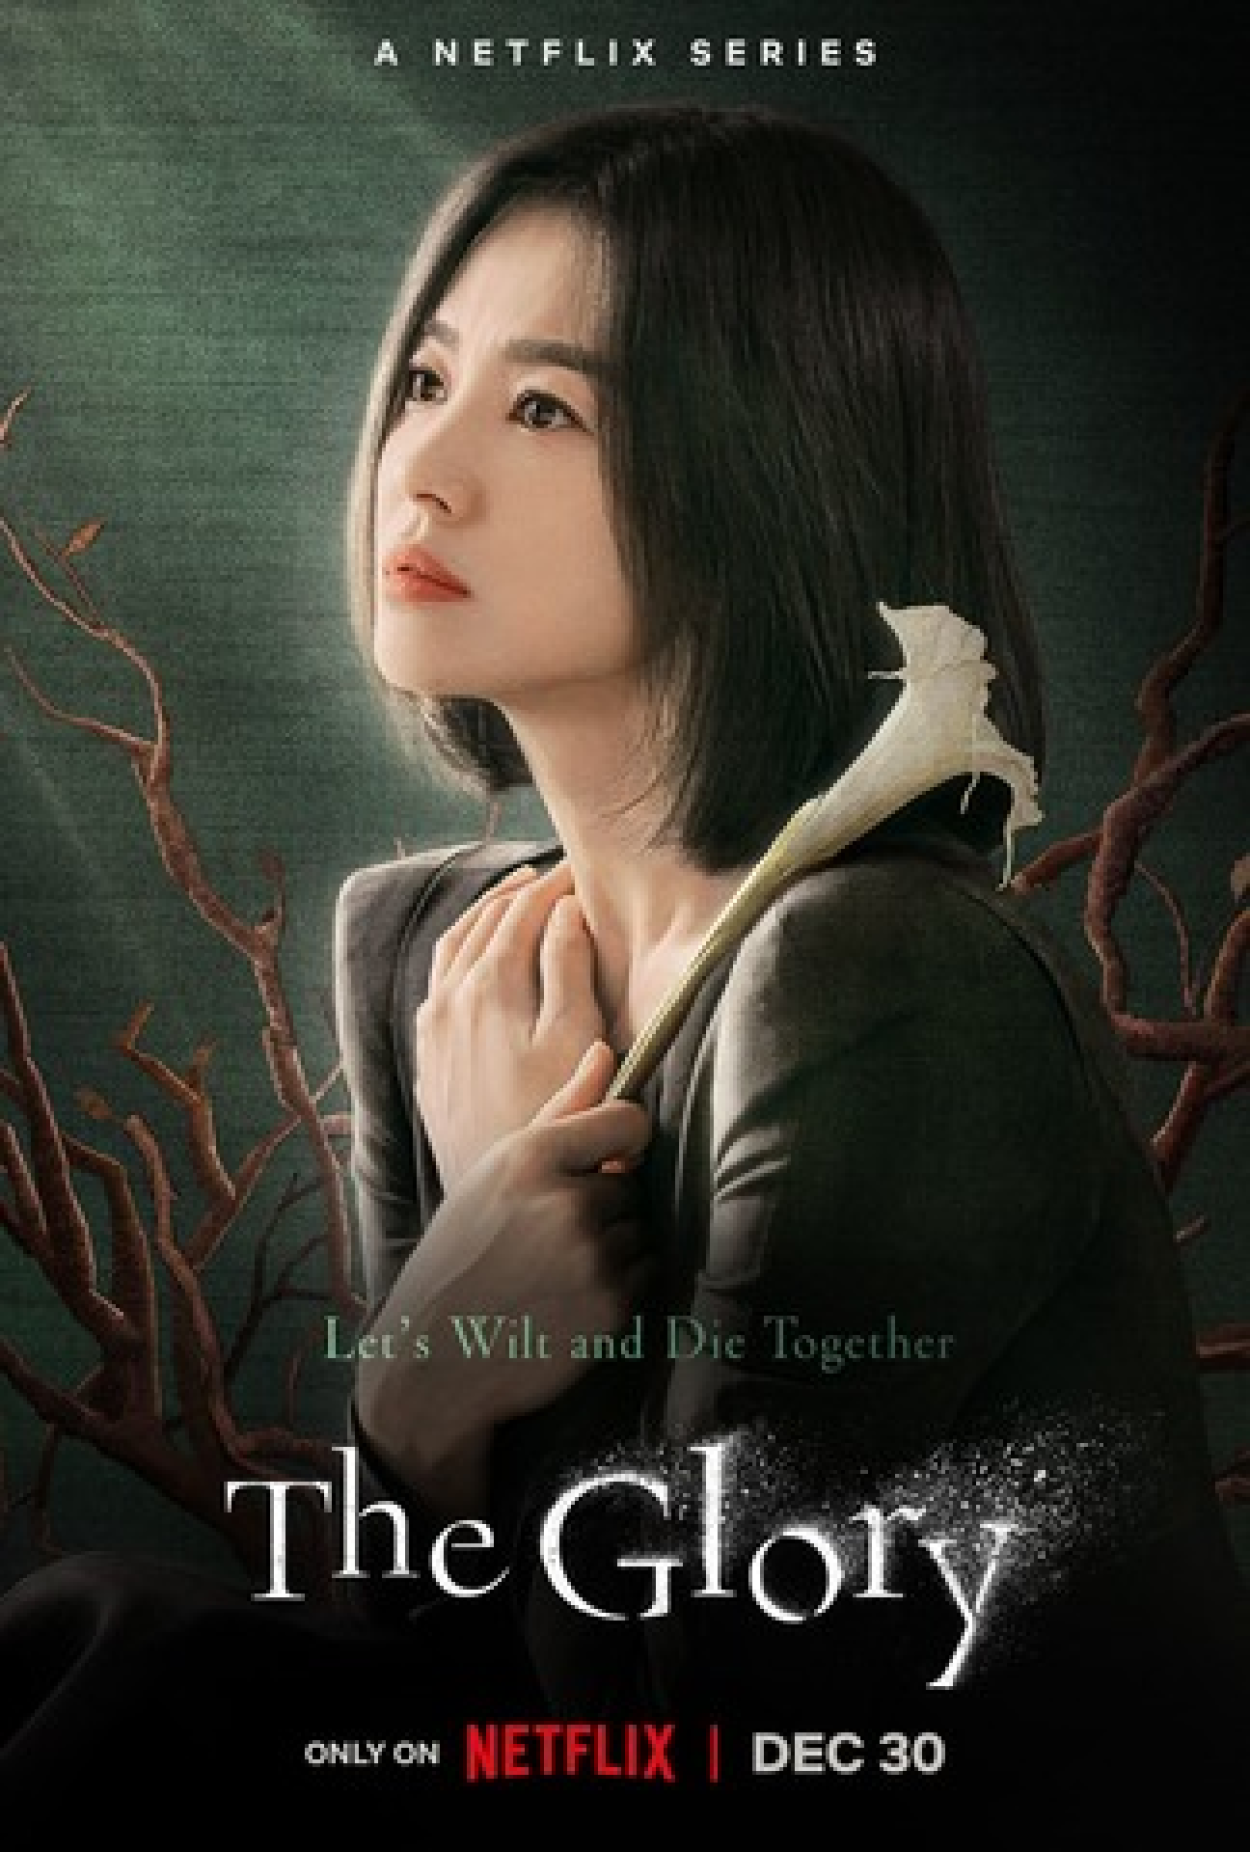 My Name: drama coreano de vingança ganha trailer pela Netflix